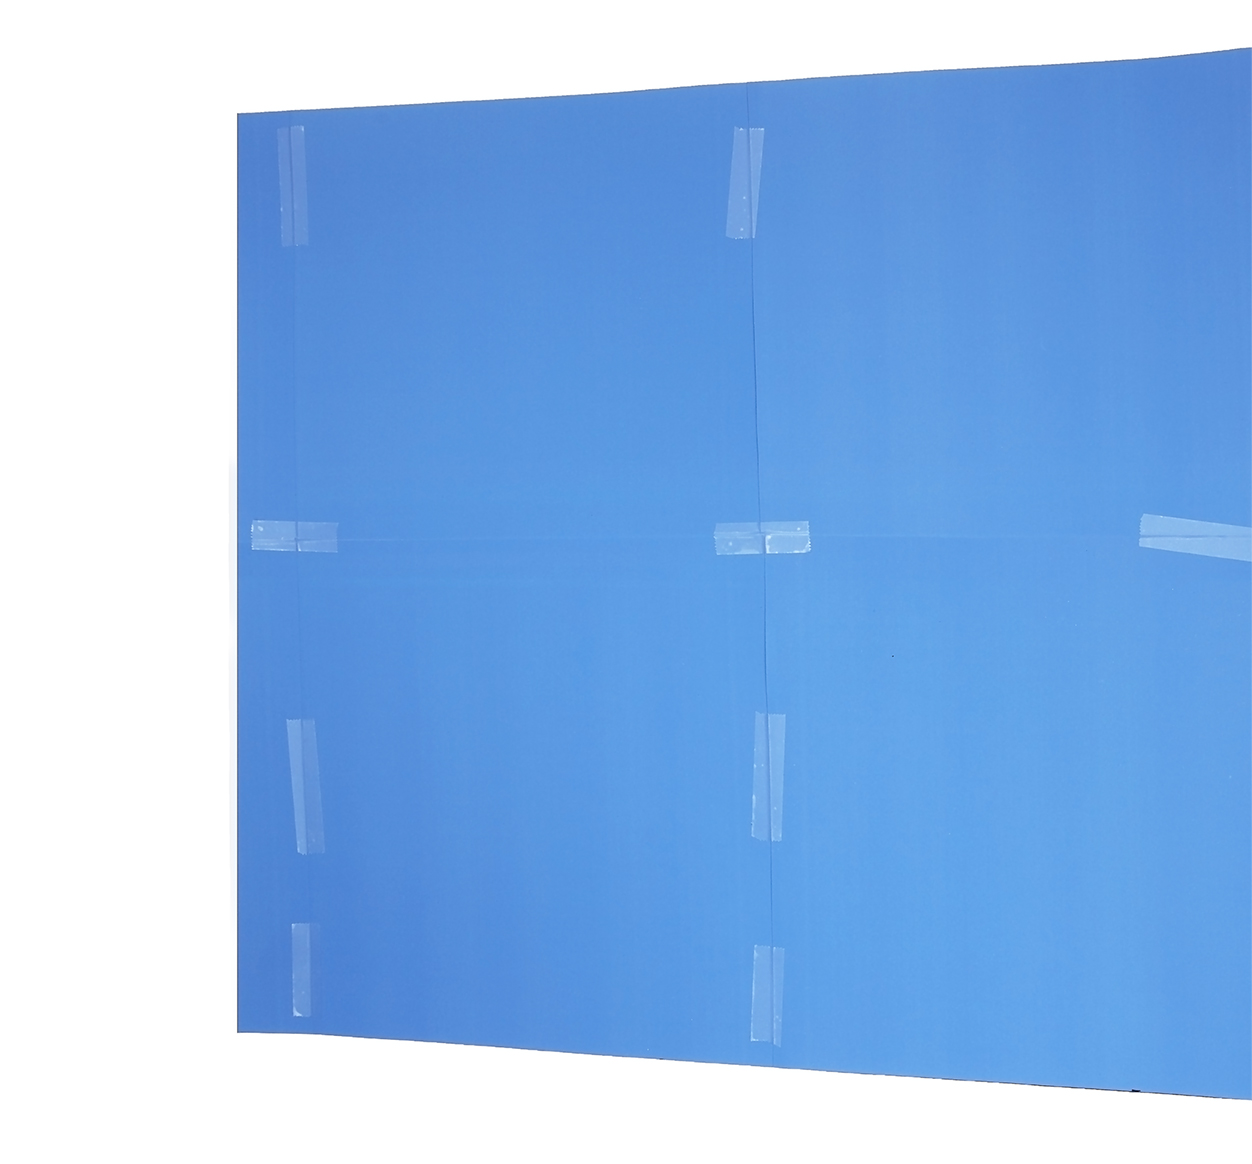 1.Blue as a Window